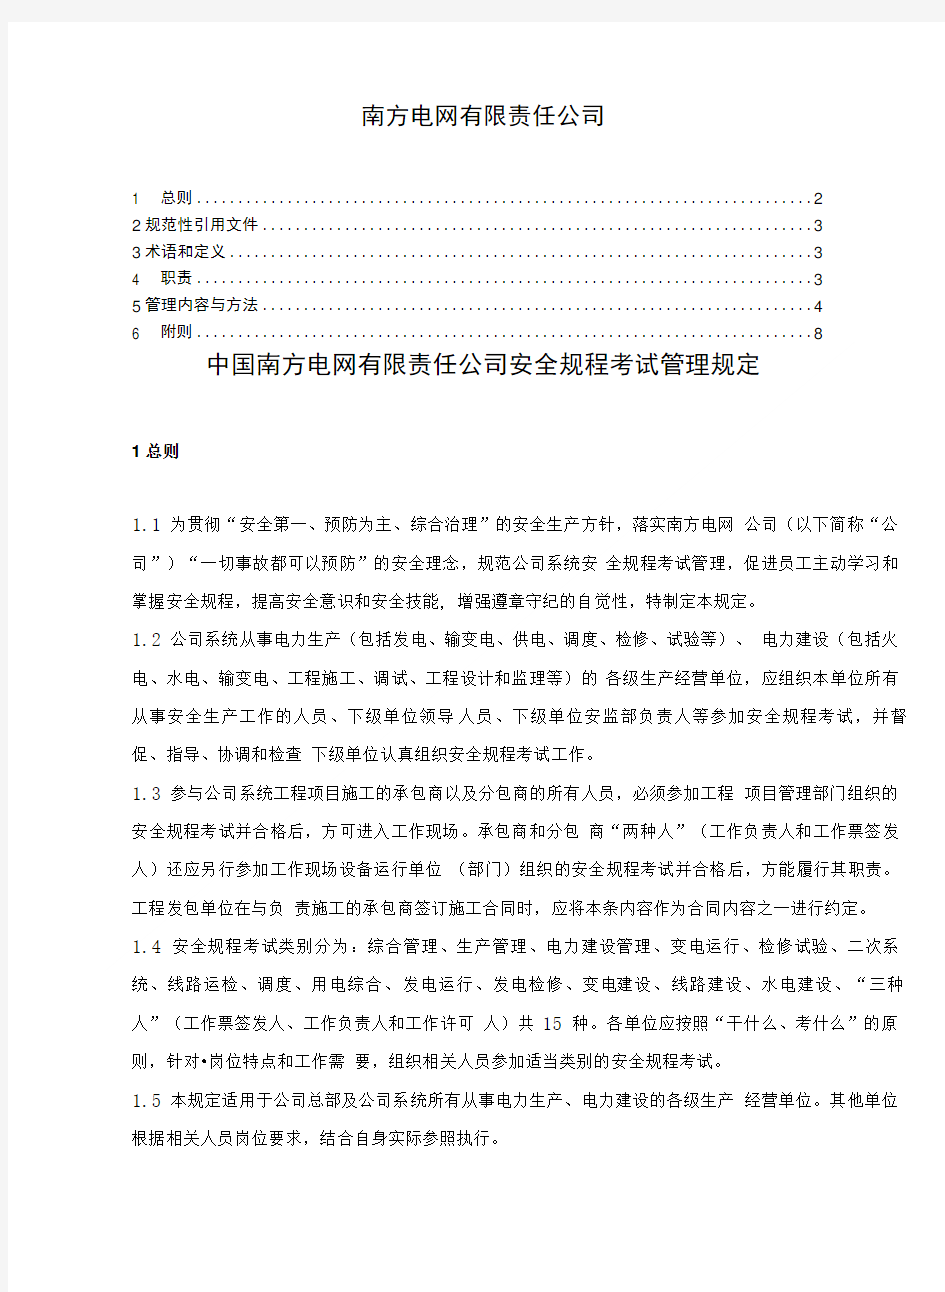 中国南方电网有限责任公司安全规程考试管理规定Q-SG--( X页).doc